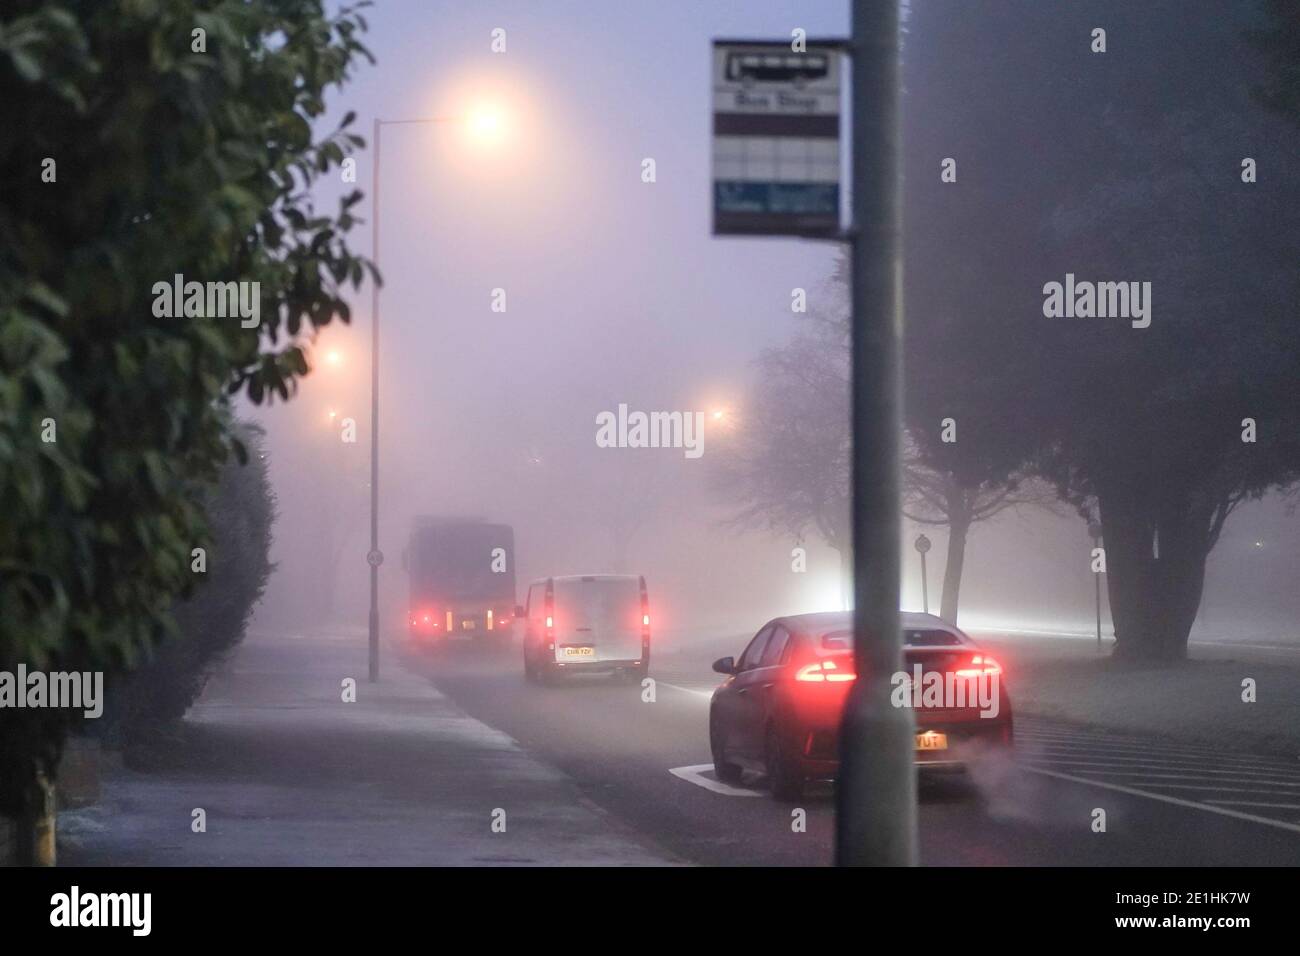 Kidderminster, Regno Unito. 7 gennaio 2021. Tempo nel Regno Unito: Nebbia pesante e temperature di congelamento rendono i viaggi molto snervosi per gli automobilisti questa mattina con condizioni stradali insidiose. Credit: Lee Hudson/Alamy Live News Foto Stock